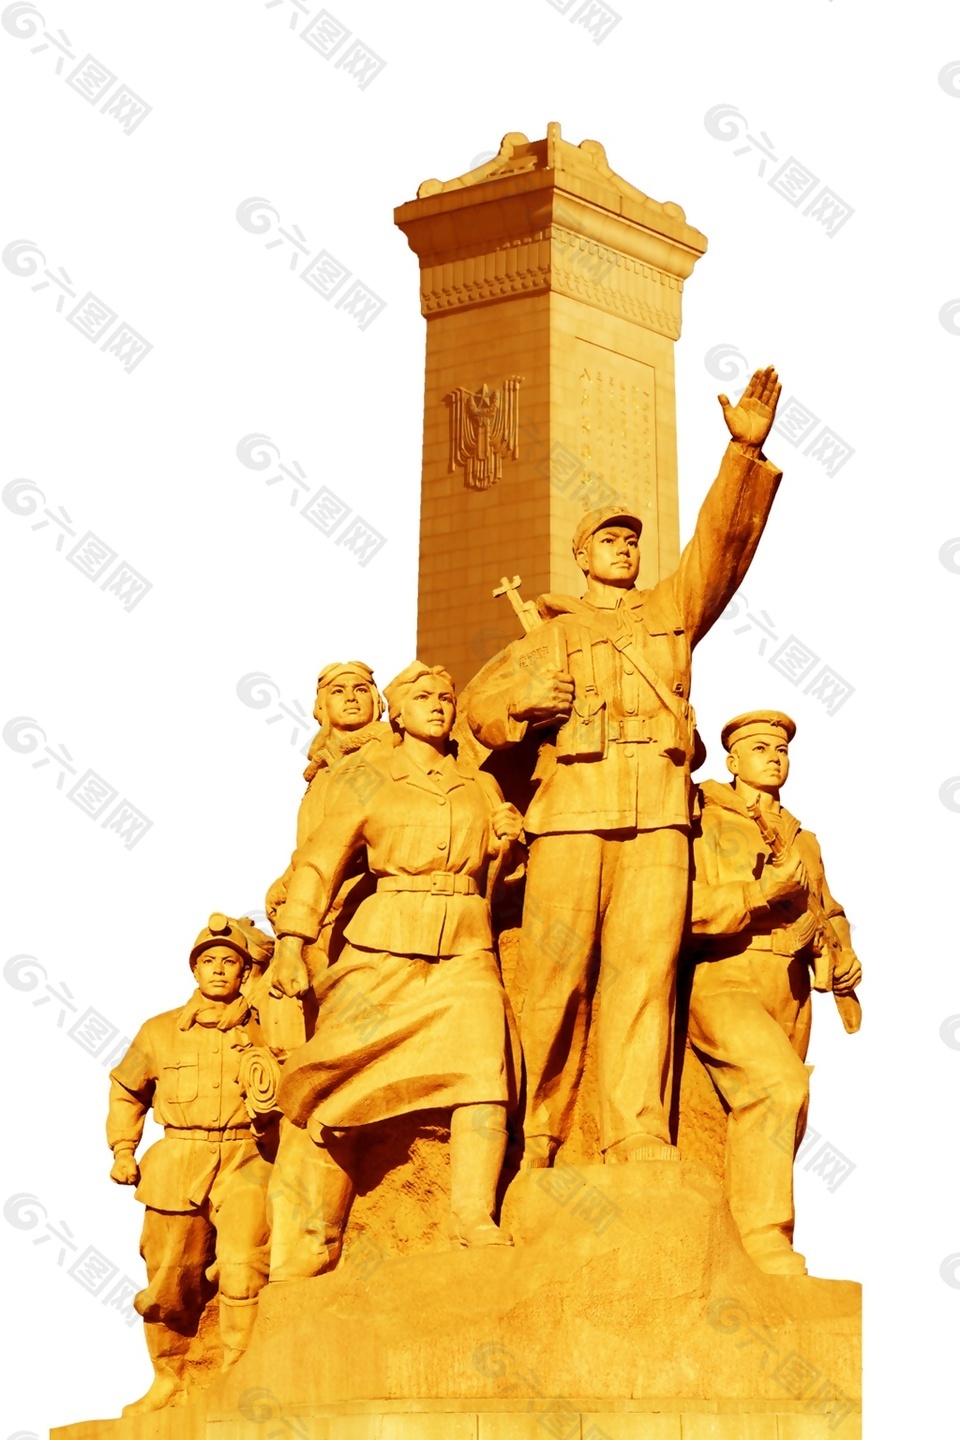 八路军人物雕像元素